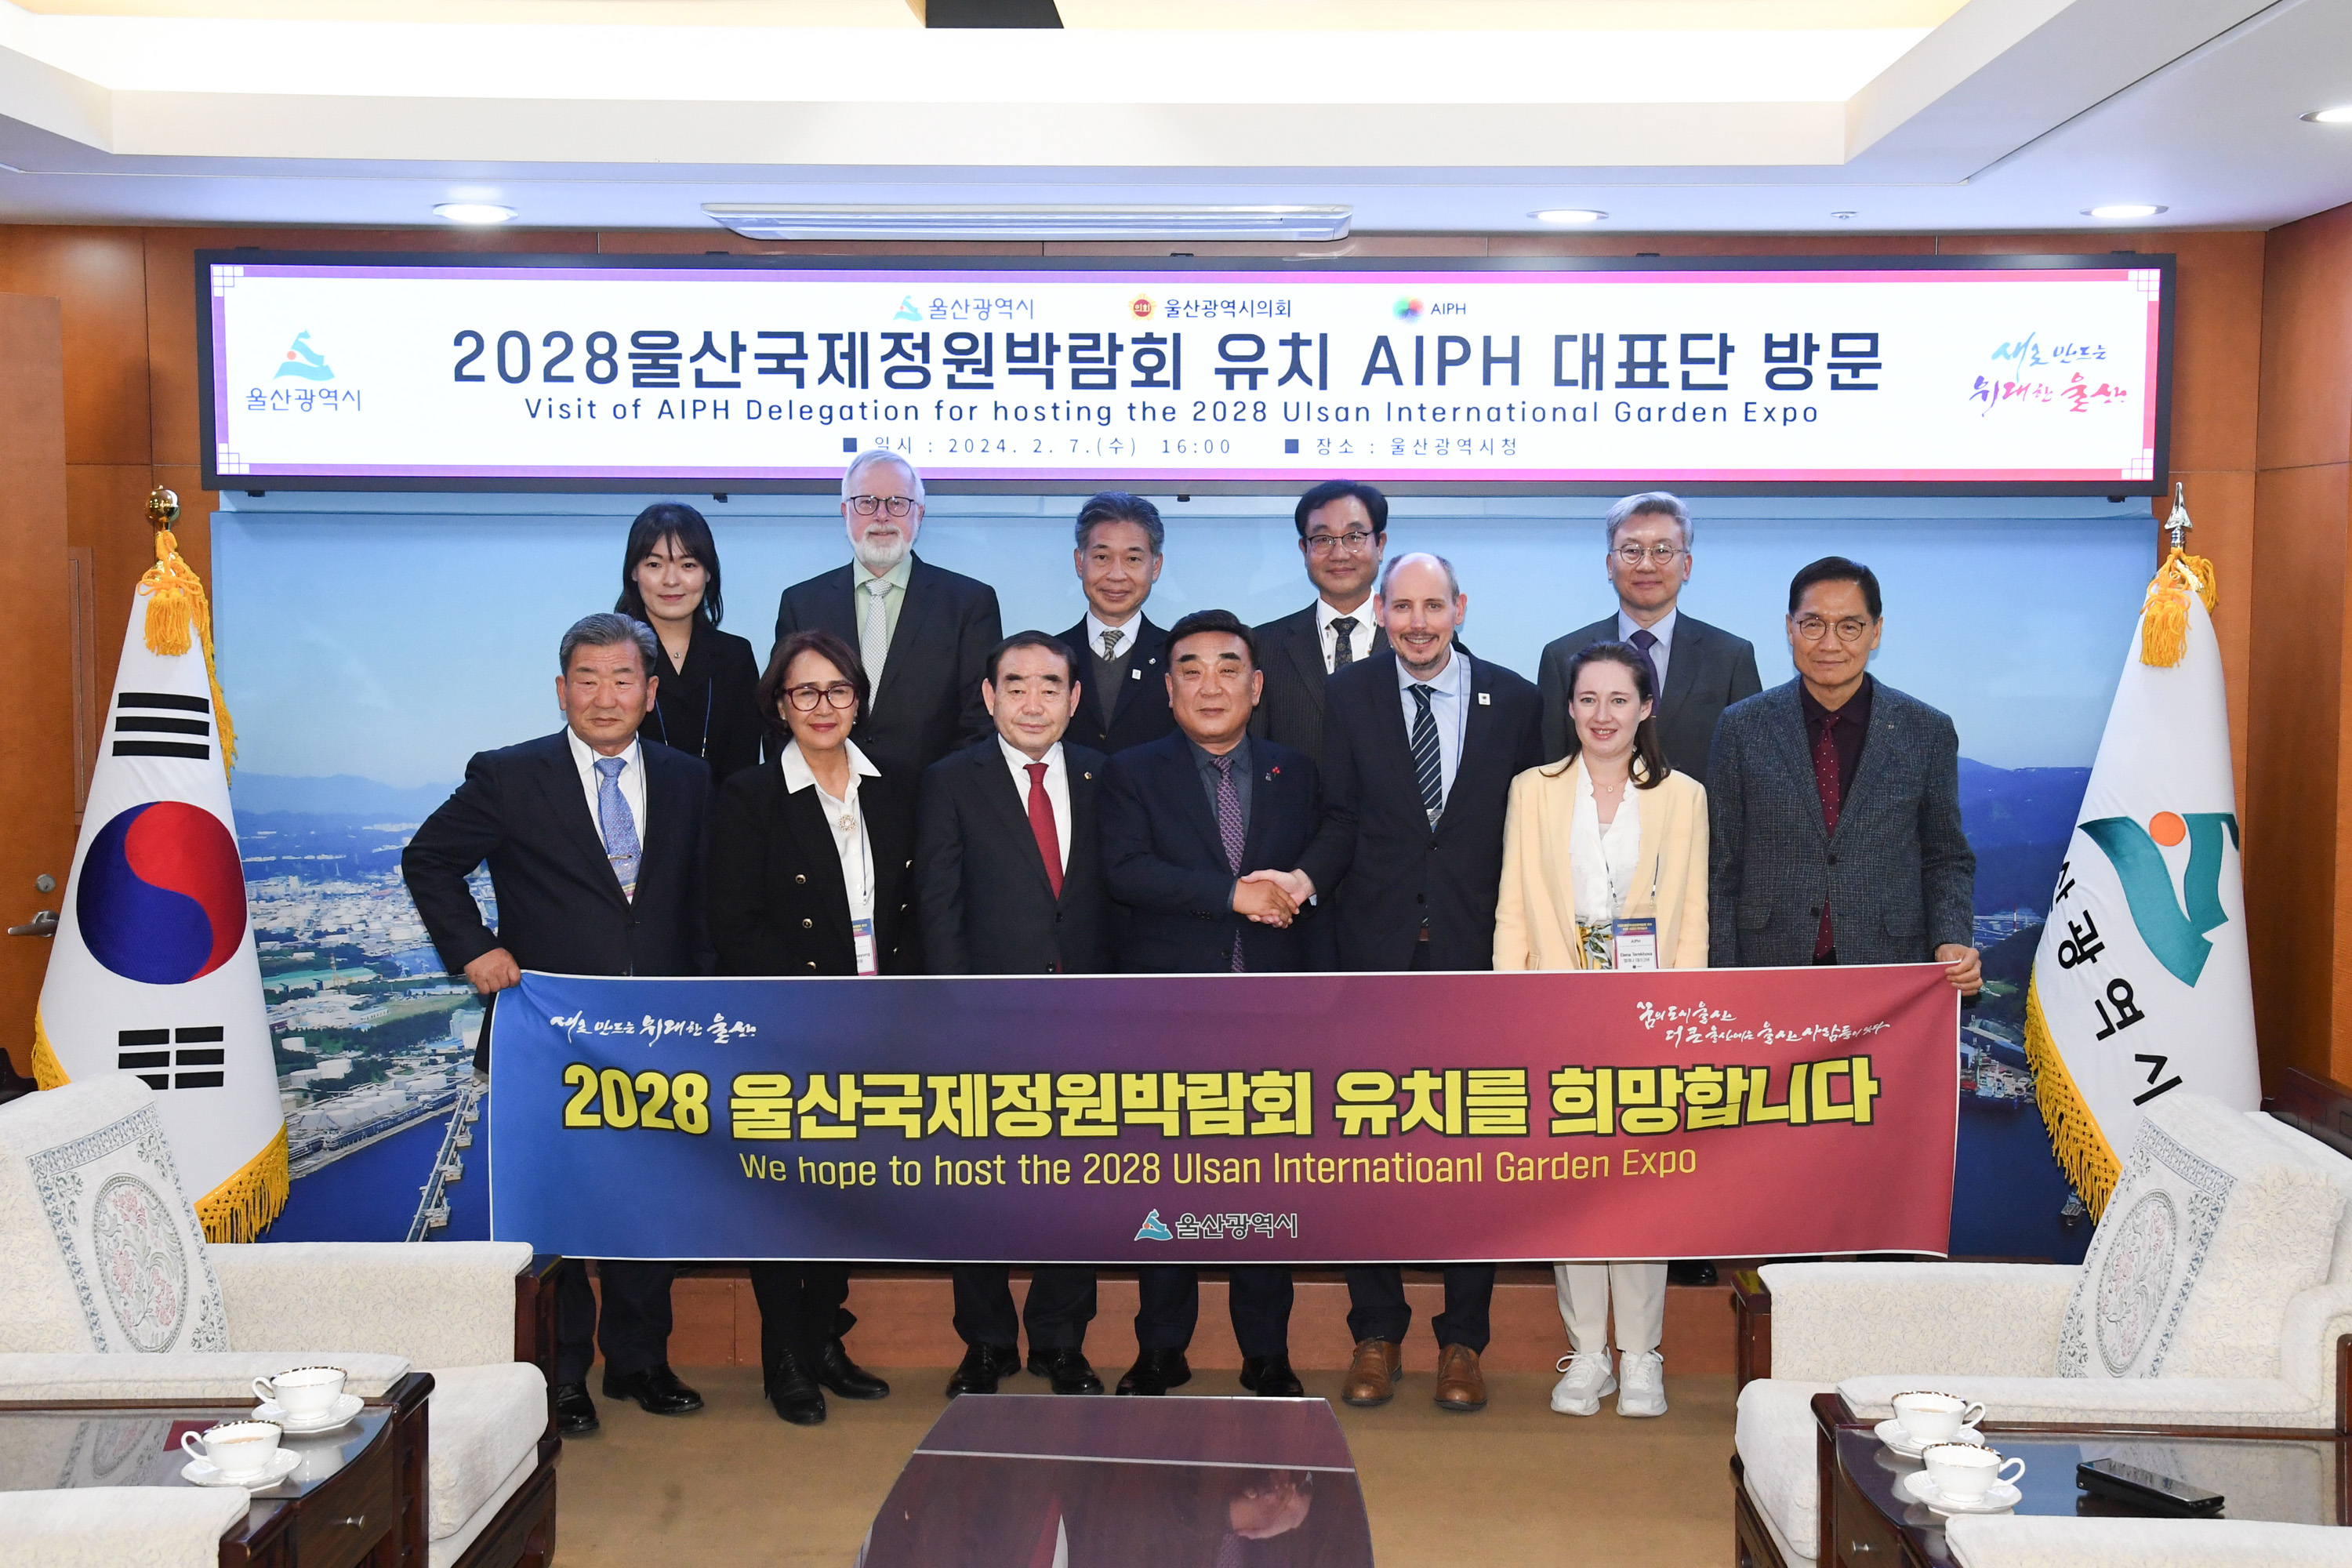 김기환 의장, 국제원예생산자협회(AIPH) 대표단 방문 환담1